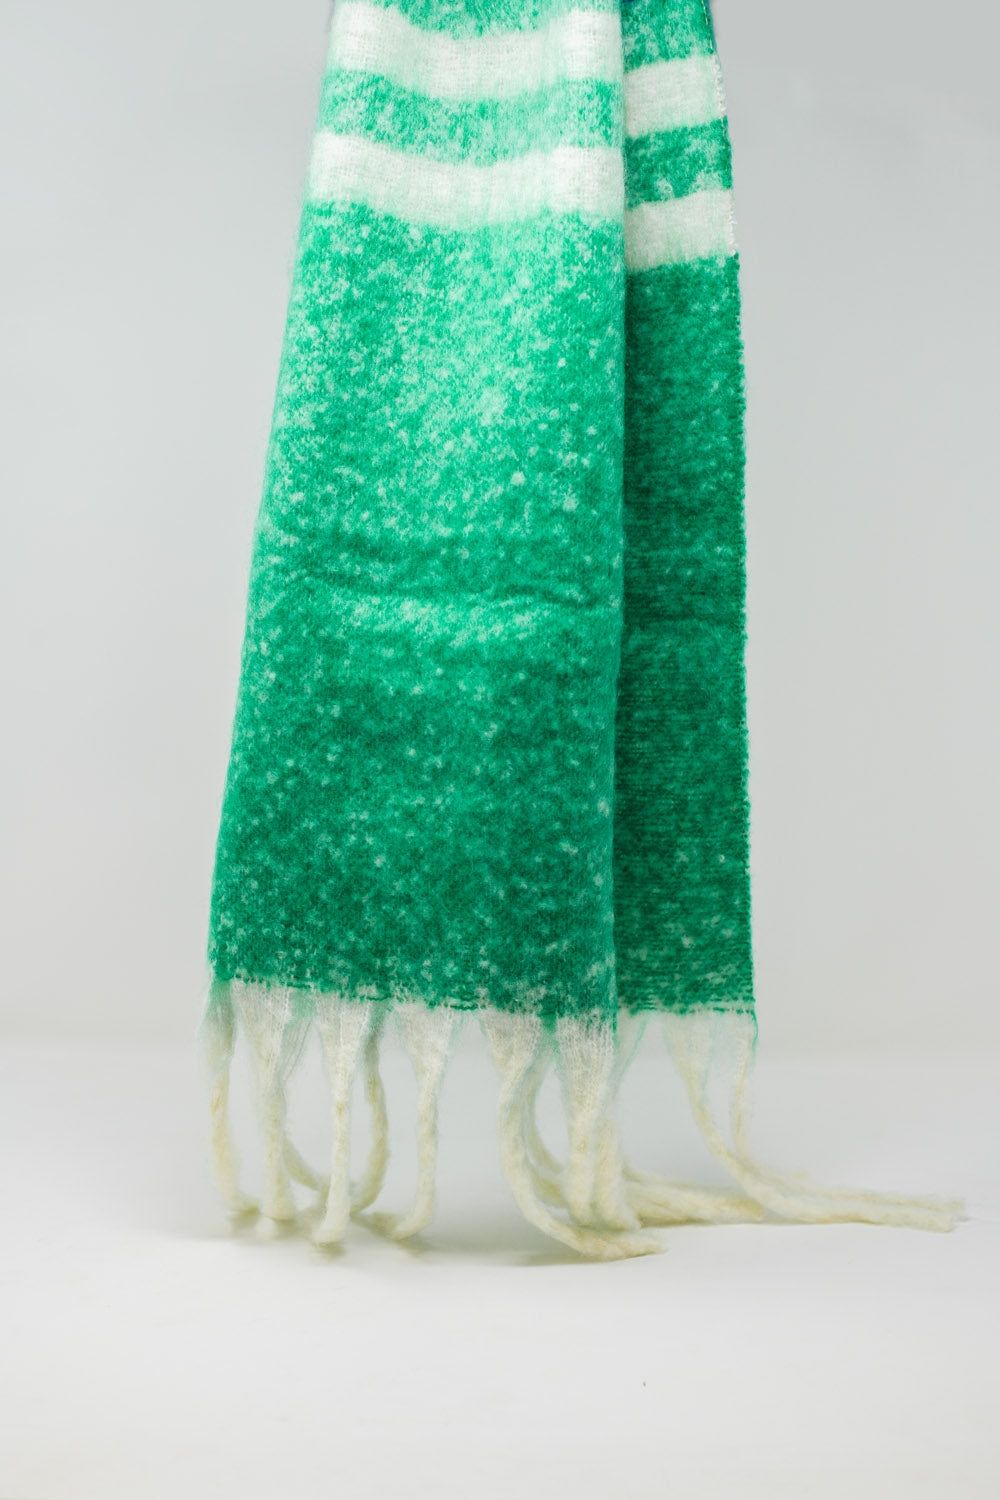 Sciarpa a maglia grossa multicolore con strisce multicolori verdi e blu